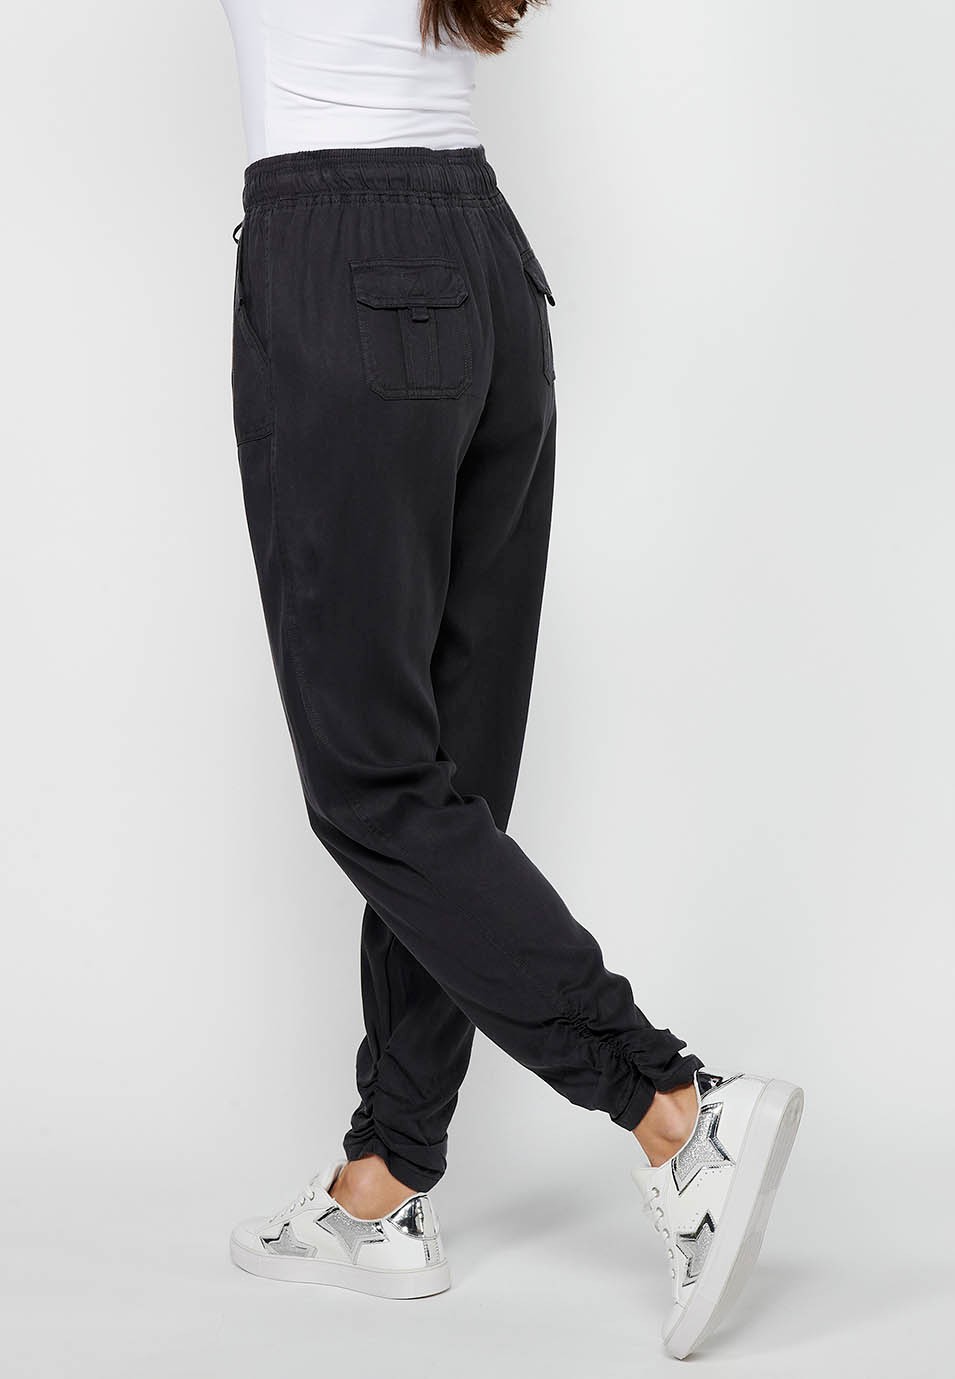 Pantalón largo jogger con Acabado rizado y Cintura engomada con Cuatro bolsillos, dos traseros con solapa de Color Negro para Mujer 8